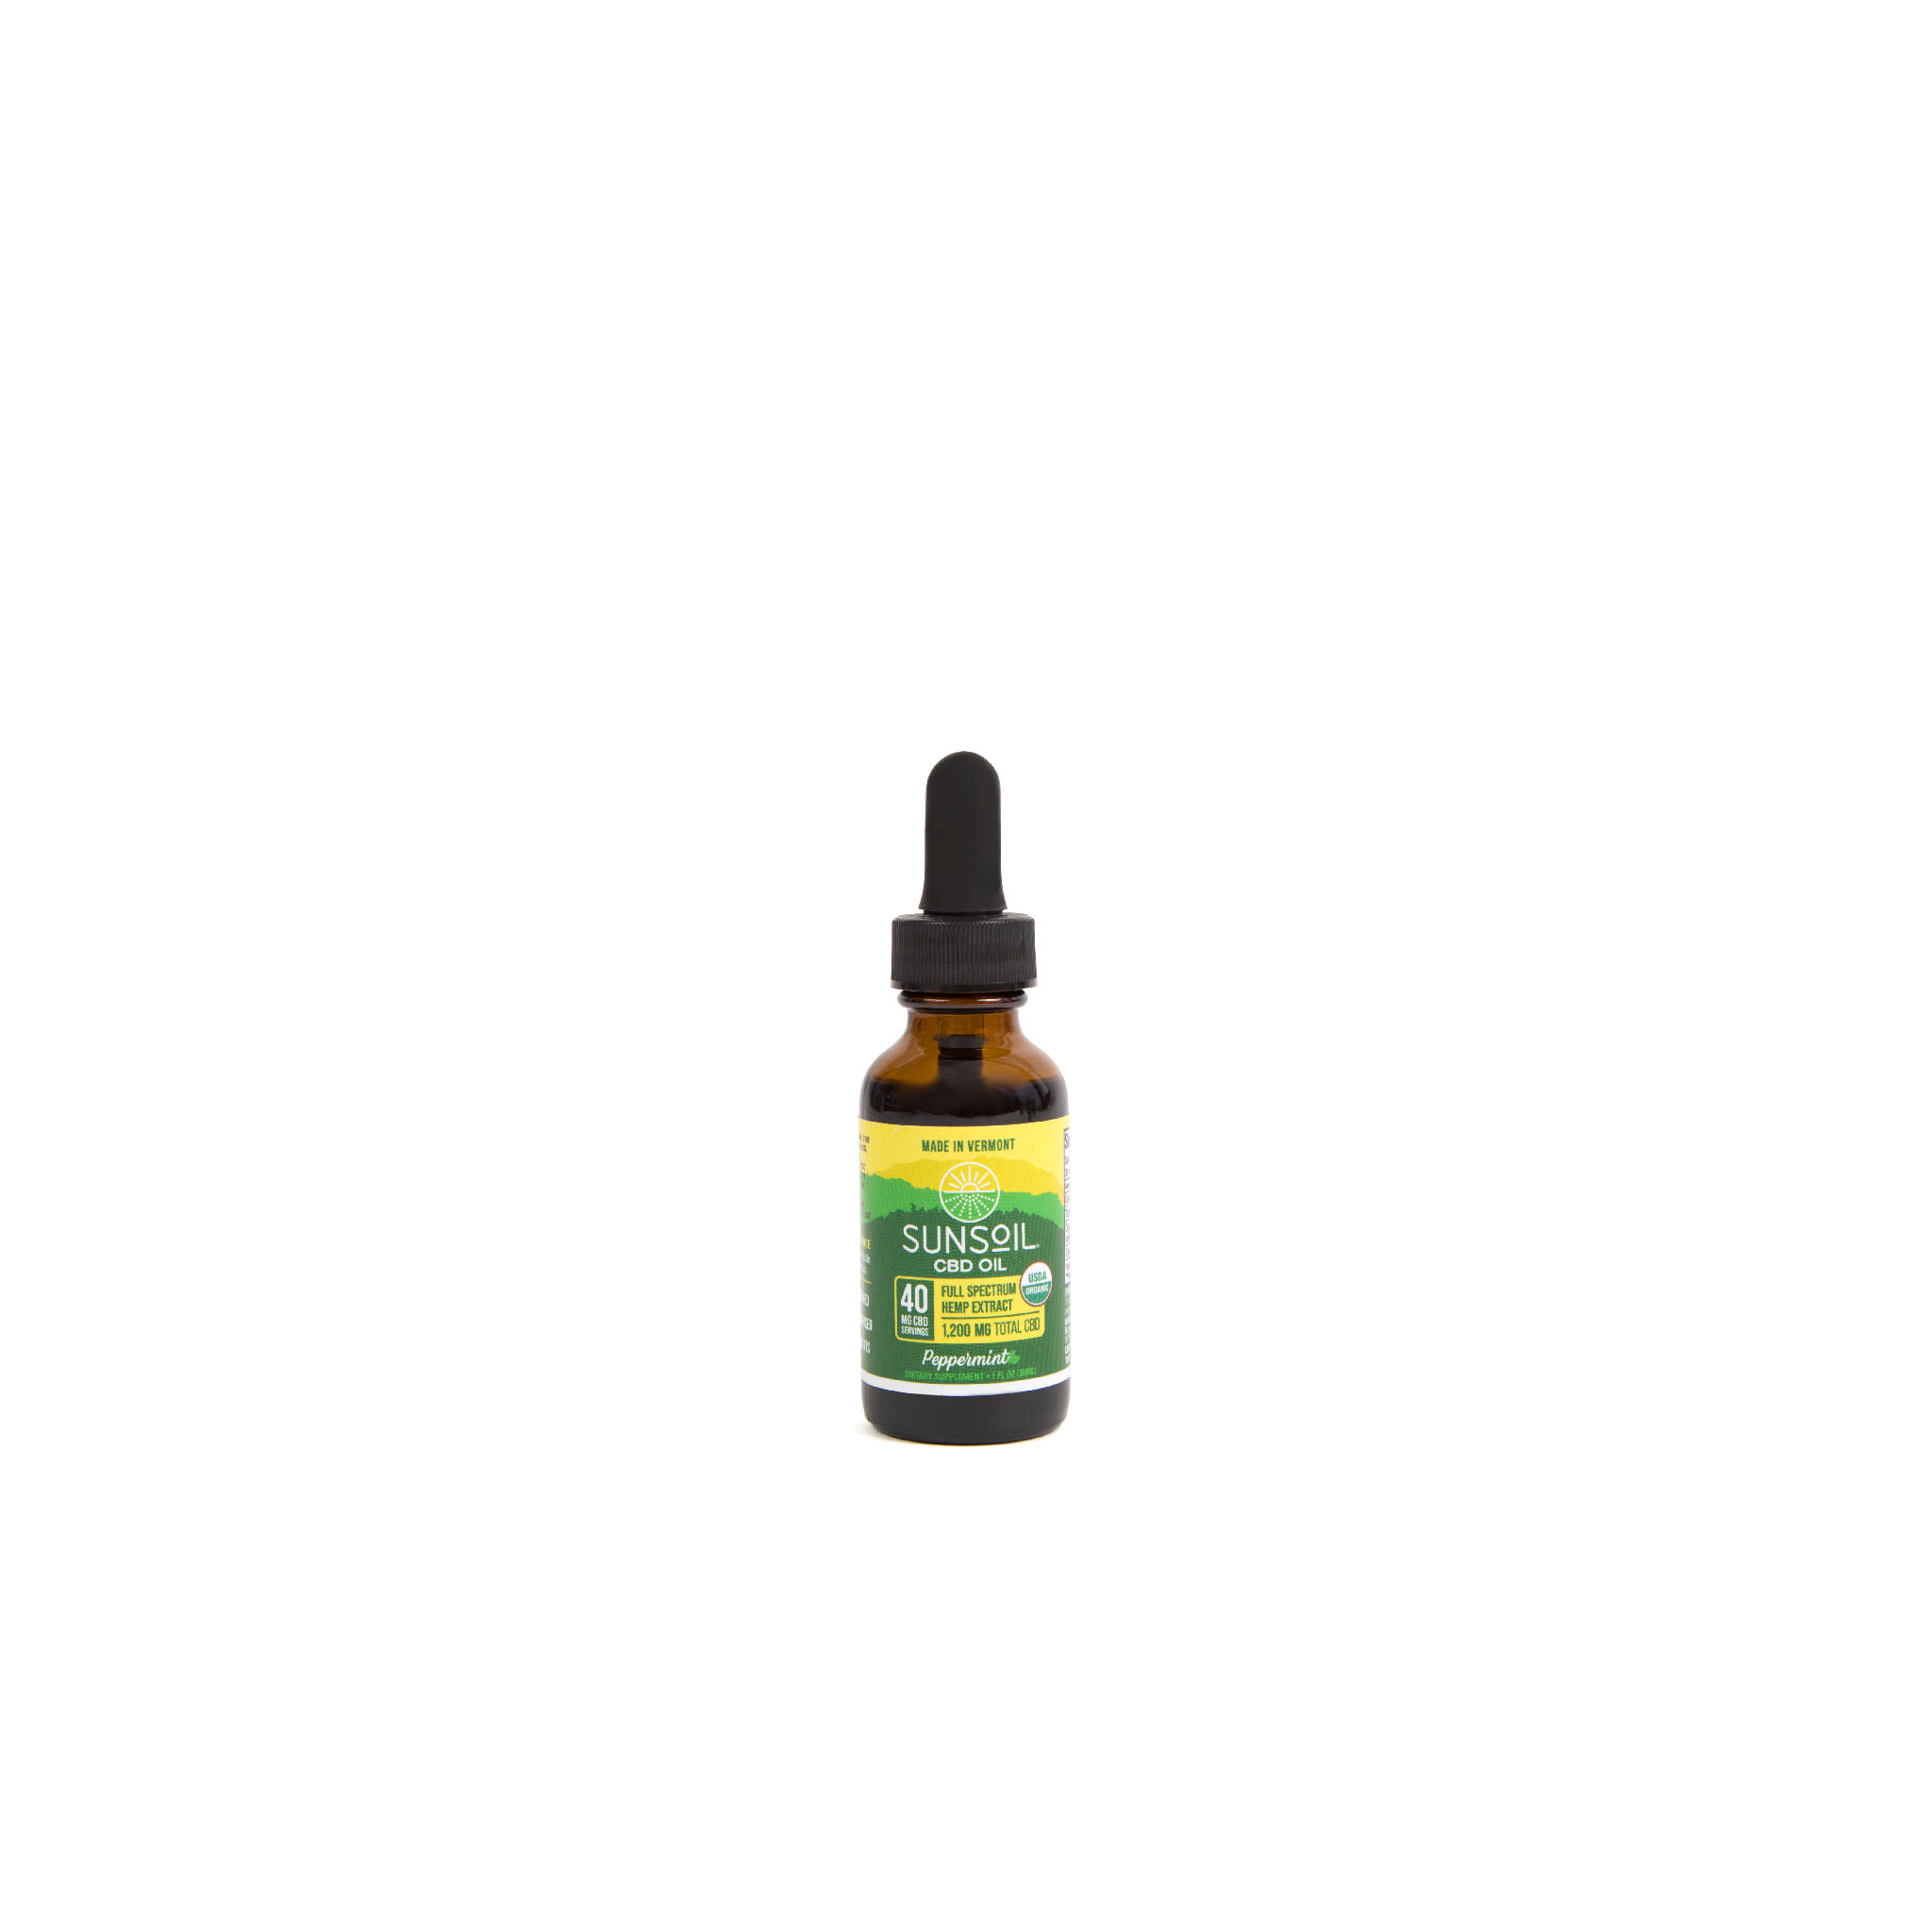 Sunsoil Cbd Oil - Cbd Oil 40 mg Pepp